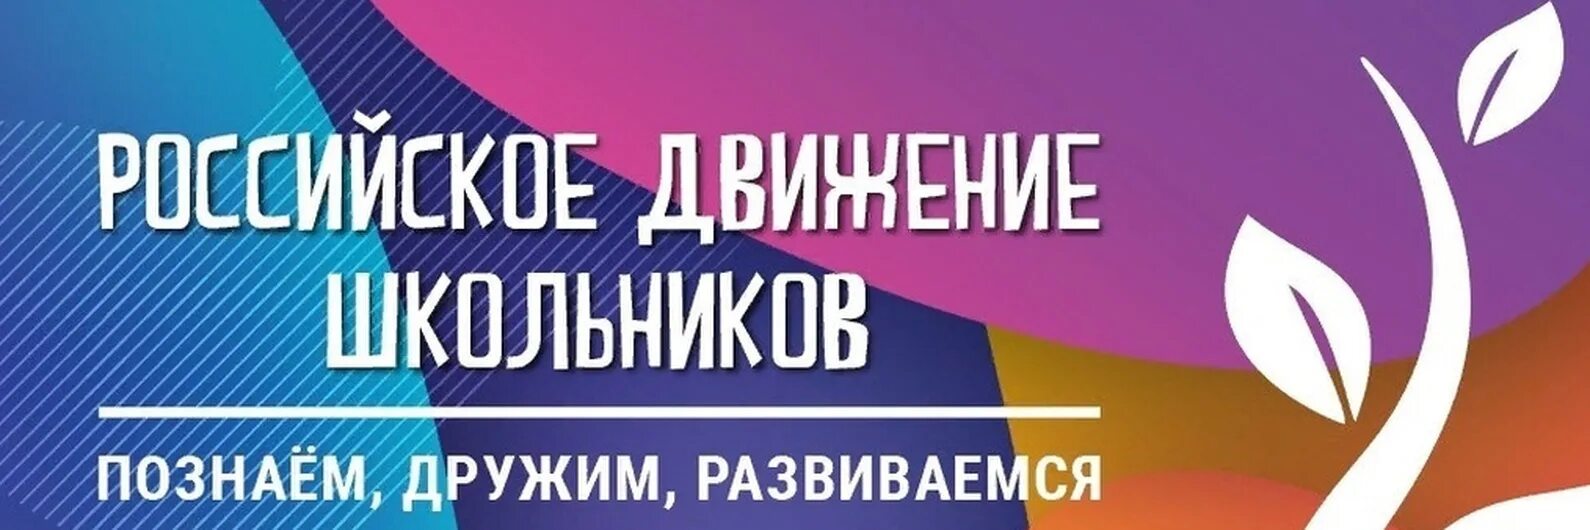 Будь в движении рф 2. Российское движение школьников. Обложка для сообщества РДШ. Баннер РДШ. РДШ логотип.